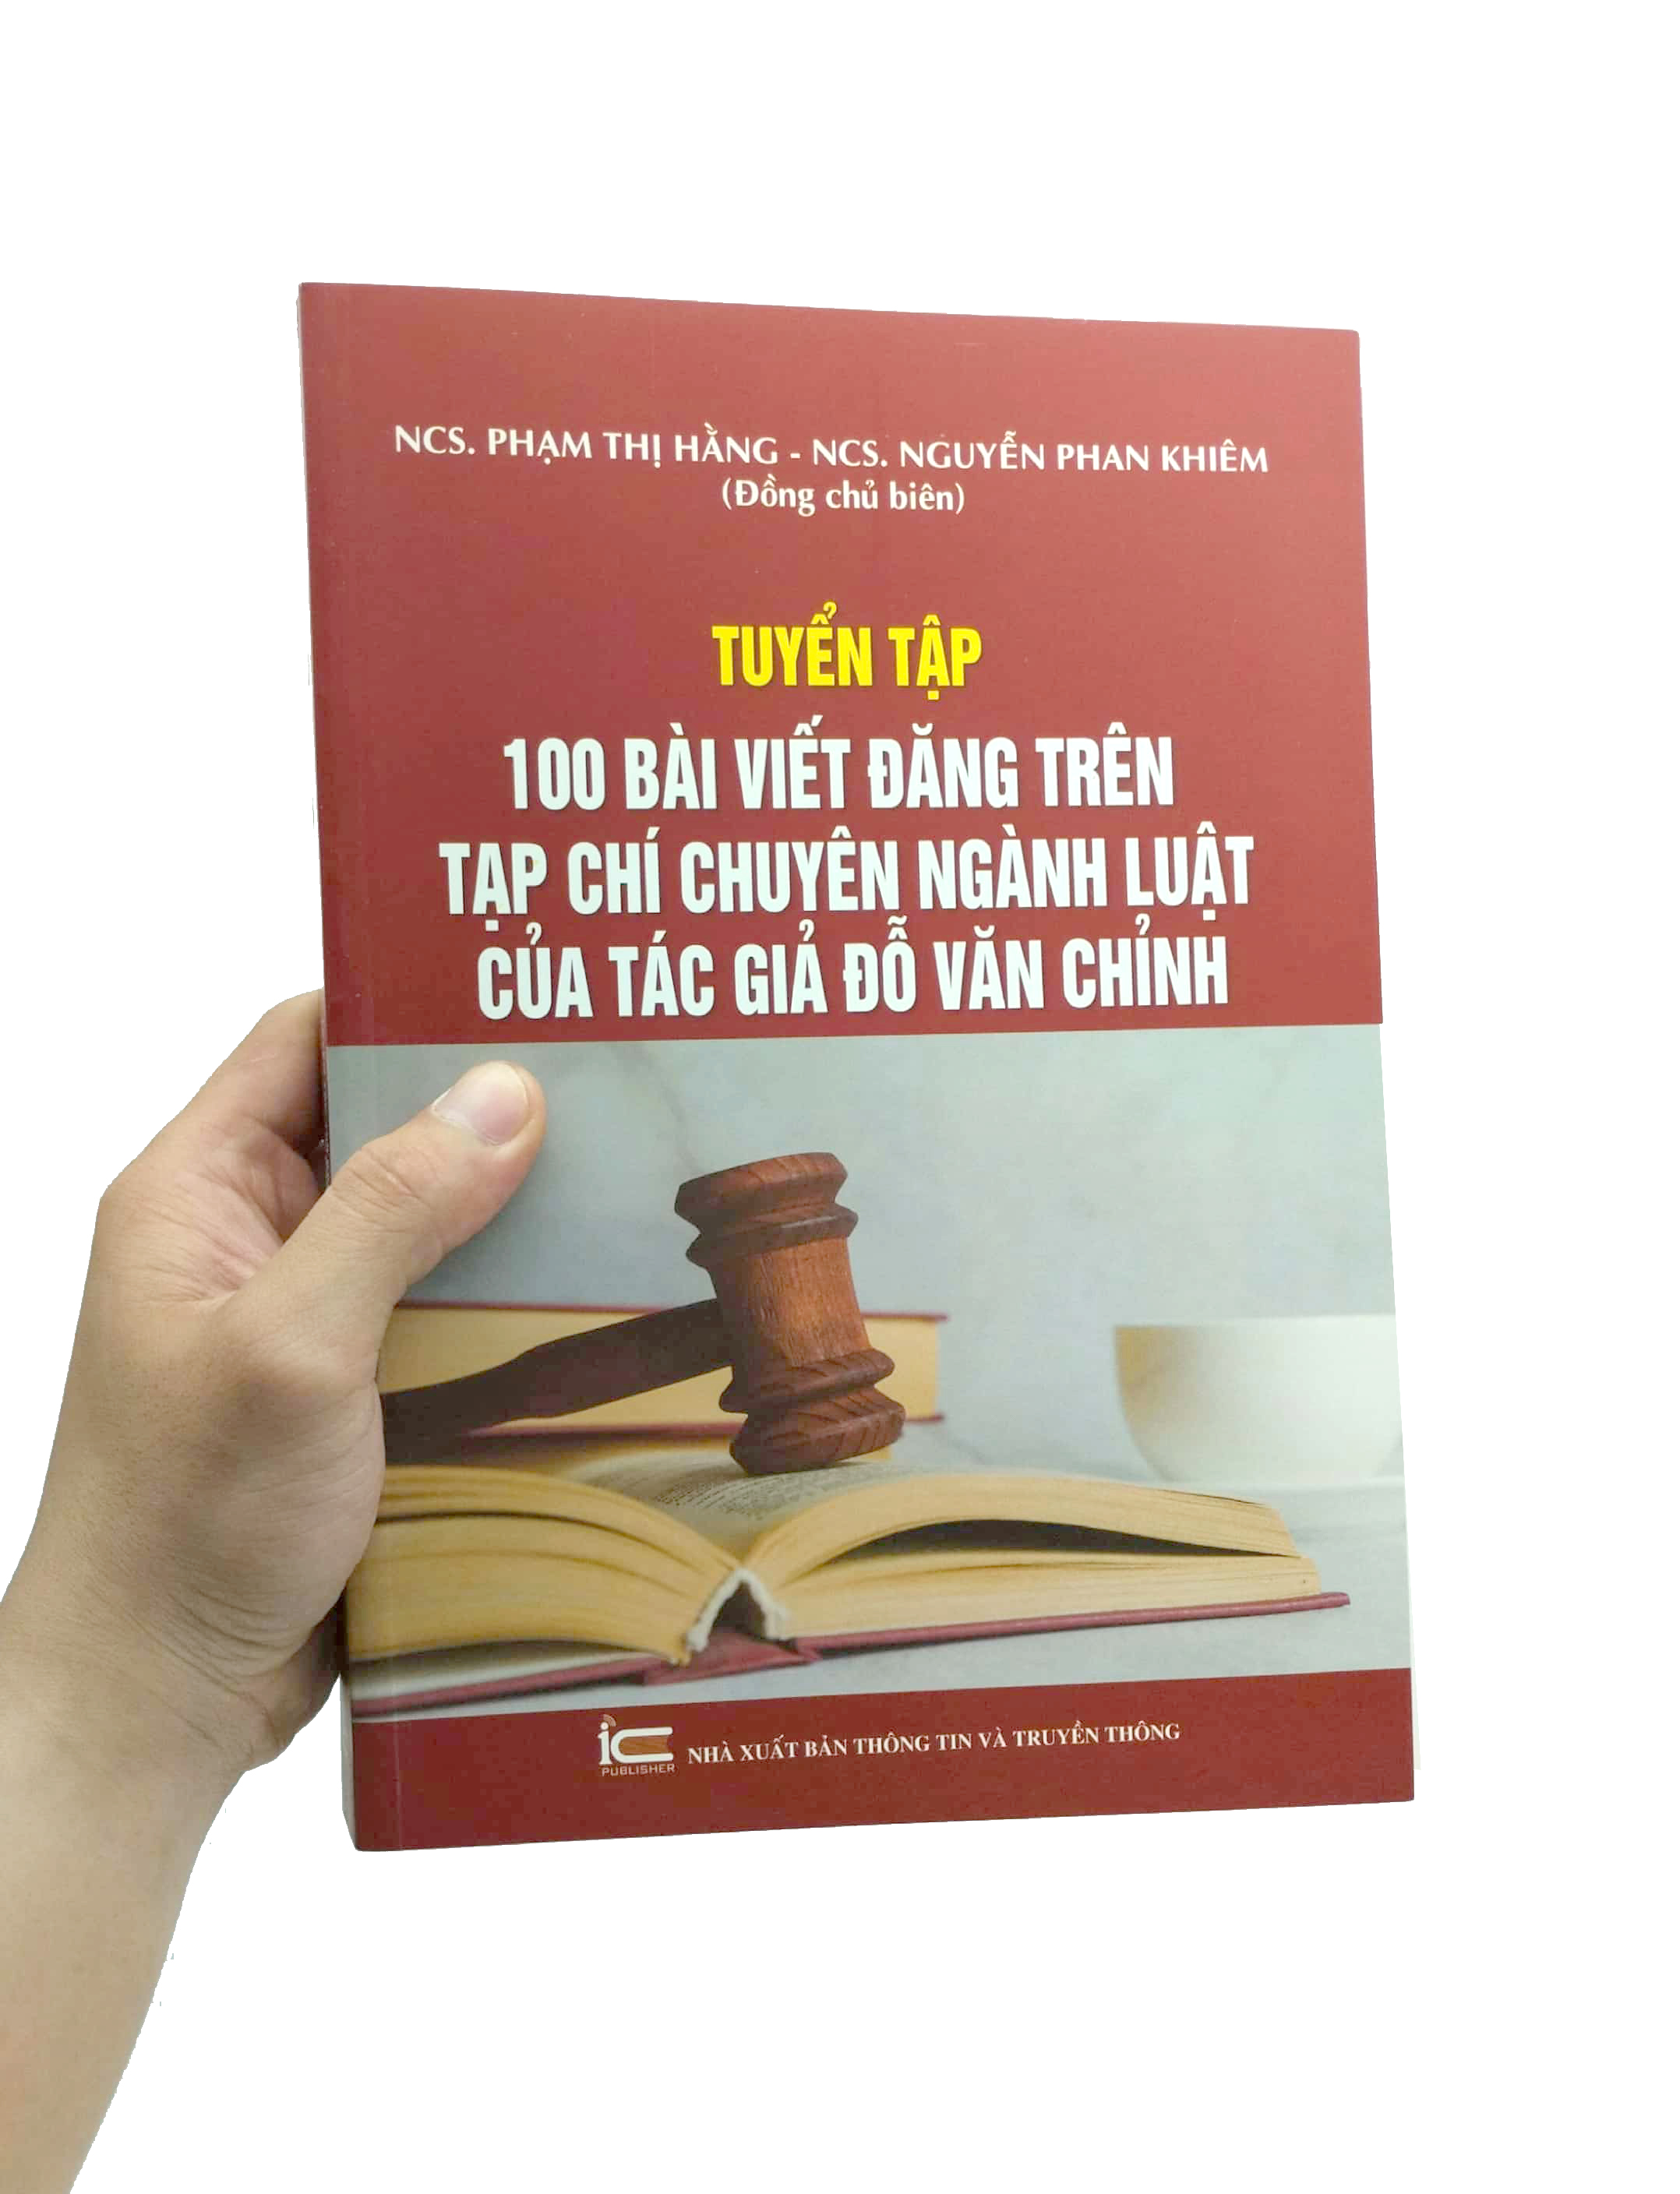 Tuyển Tập 100 Bài Viết Đăng Trên Tạp Chí Chuyên Ngành Luật Của Tác Giả Đỗ Văn Chỉnh PDF